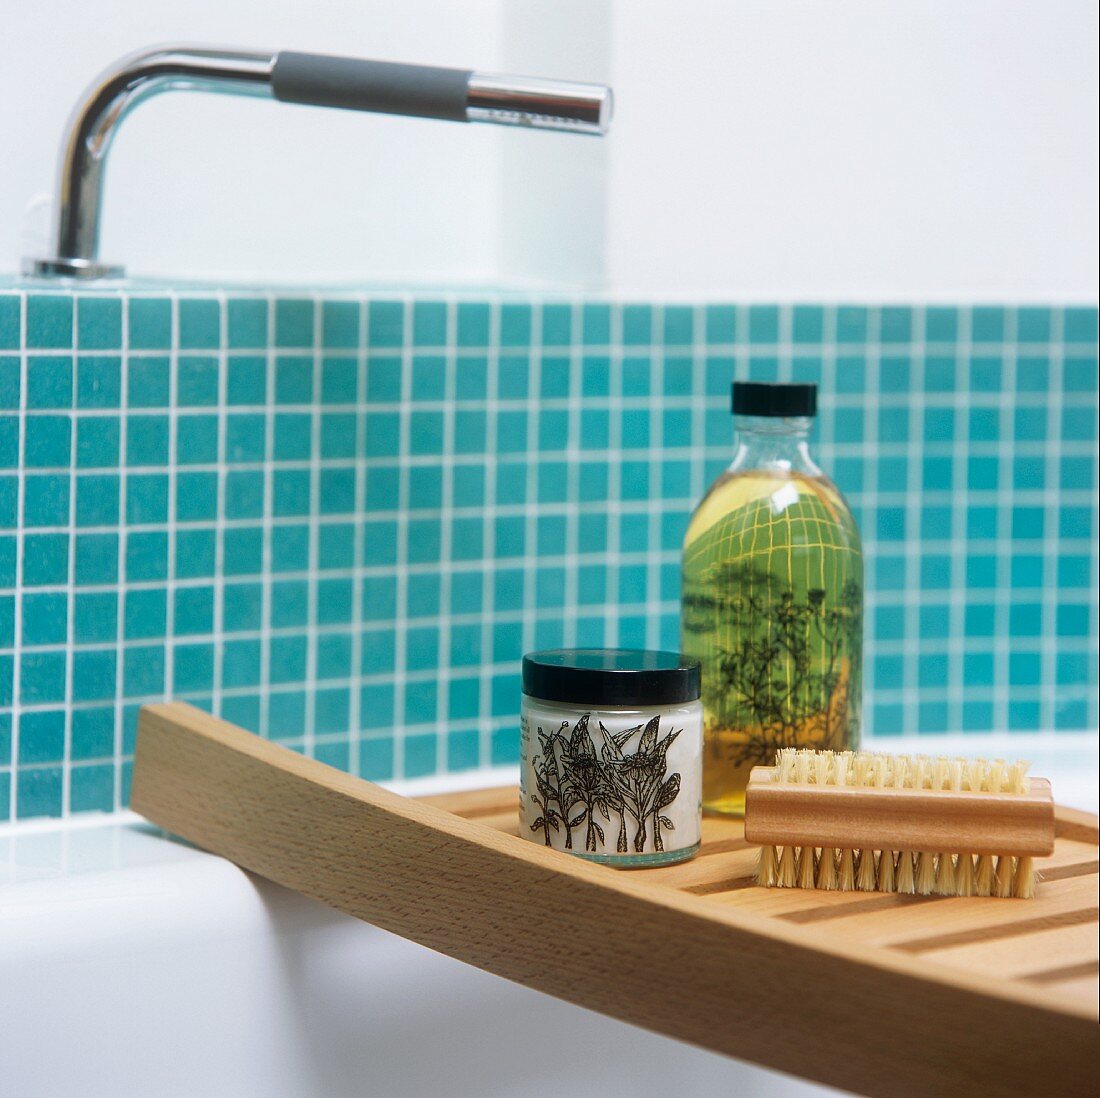 Bathing utensils on a shelf across a bath tub